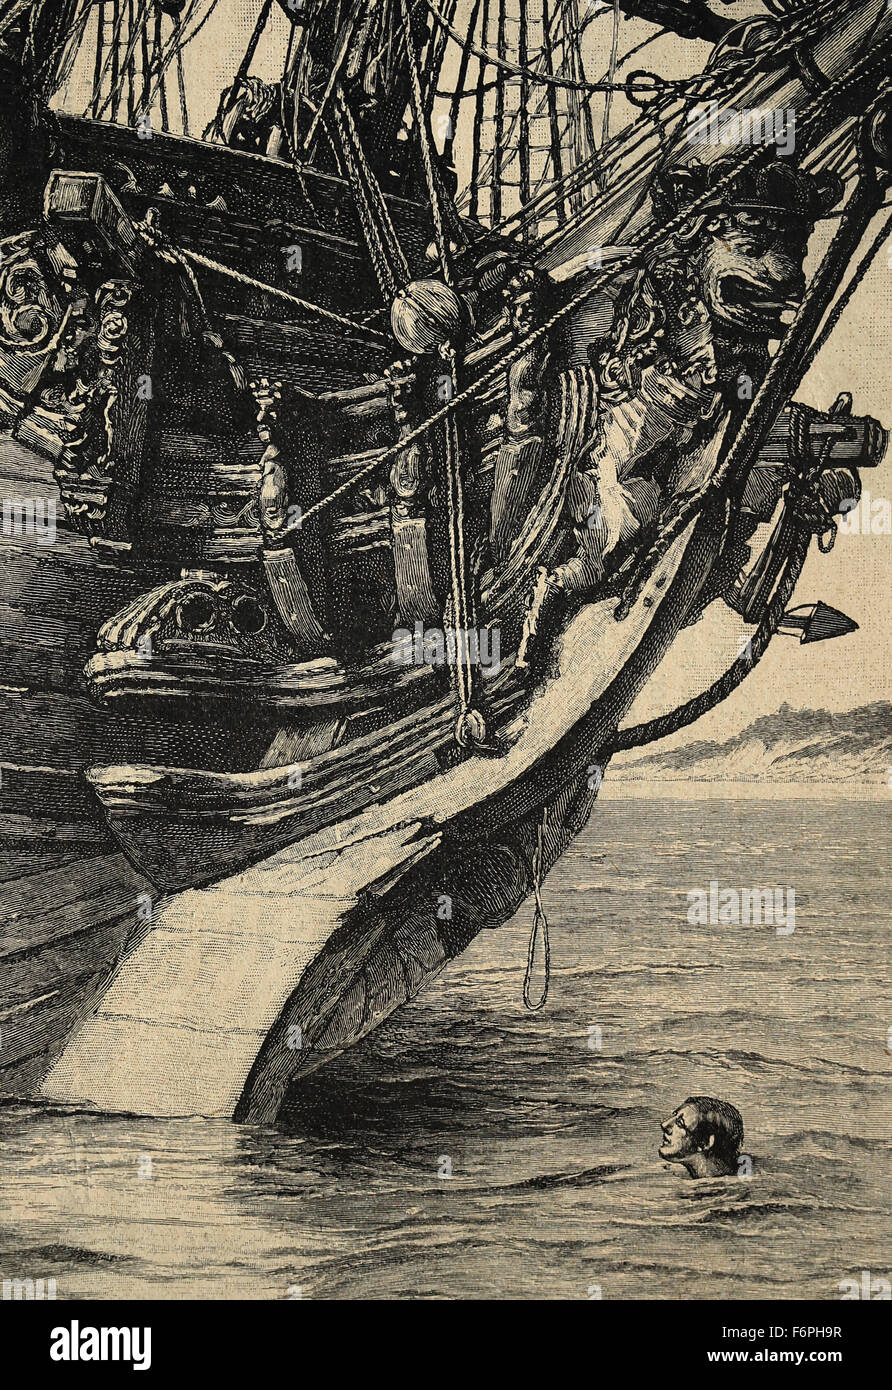 Robinson Crusoe. La novela de Daniel Defoe, publicado en 1719. "Percibí un pequeño trozo de cuerda". Ilustrado por Walter Paget. Foto de stock